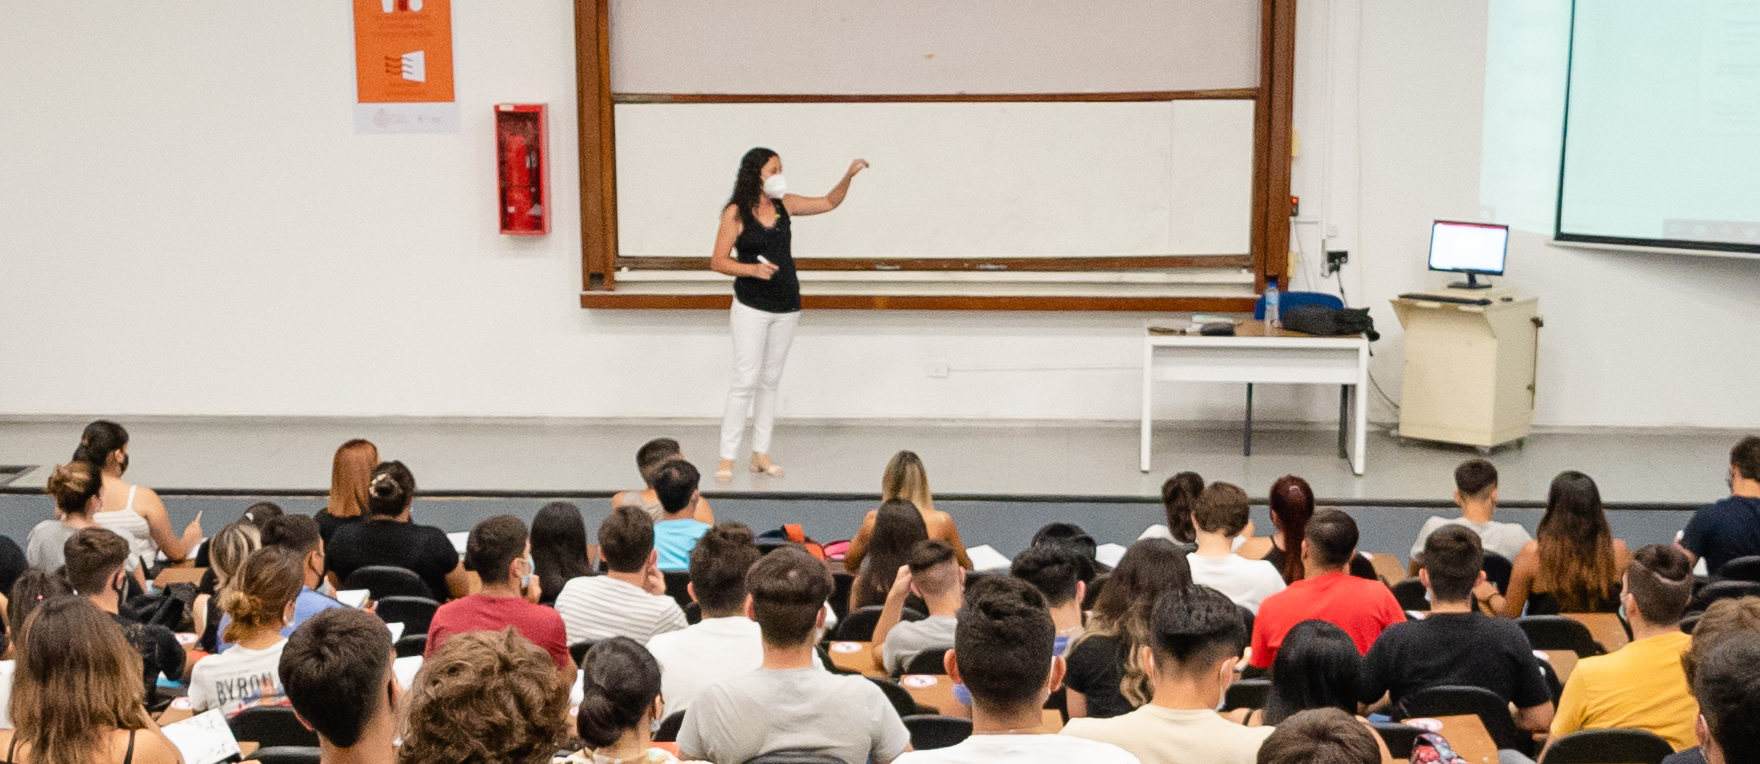 Una docente con barbijo de pie en un aula señala una pantalla gigante ante la mirada de una treintena de estudiantes sentados